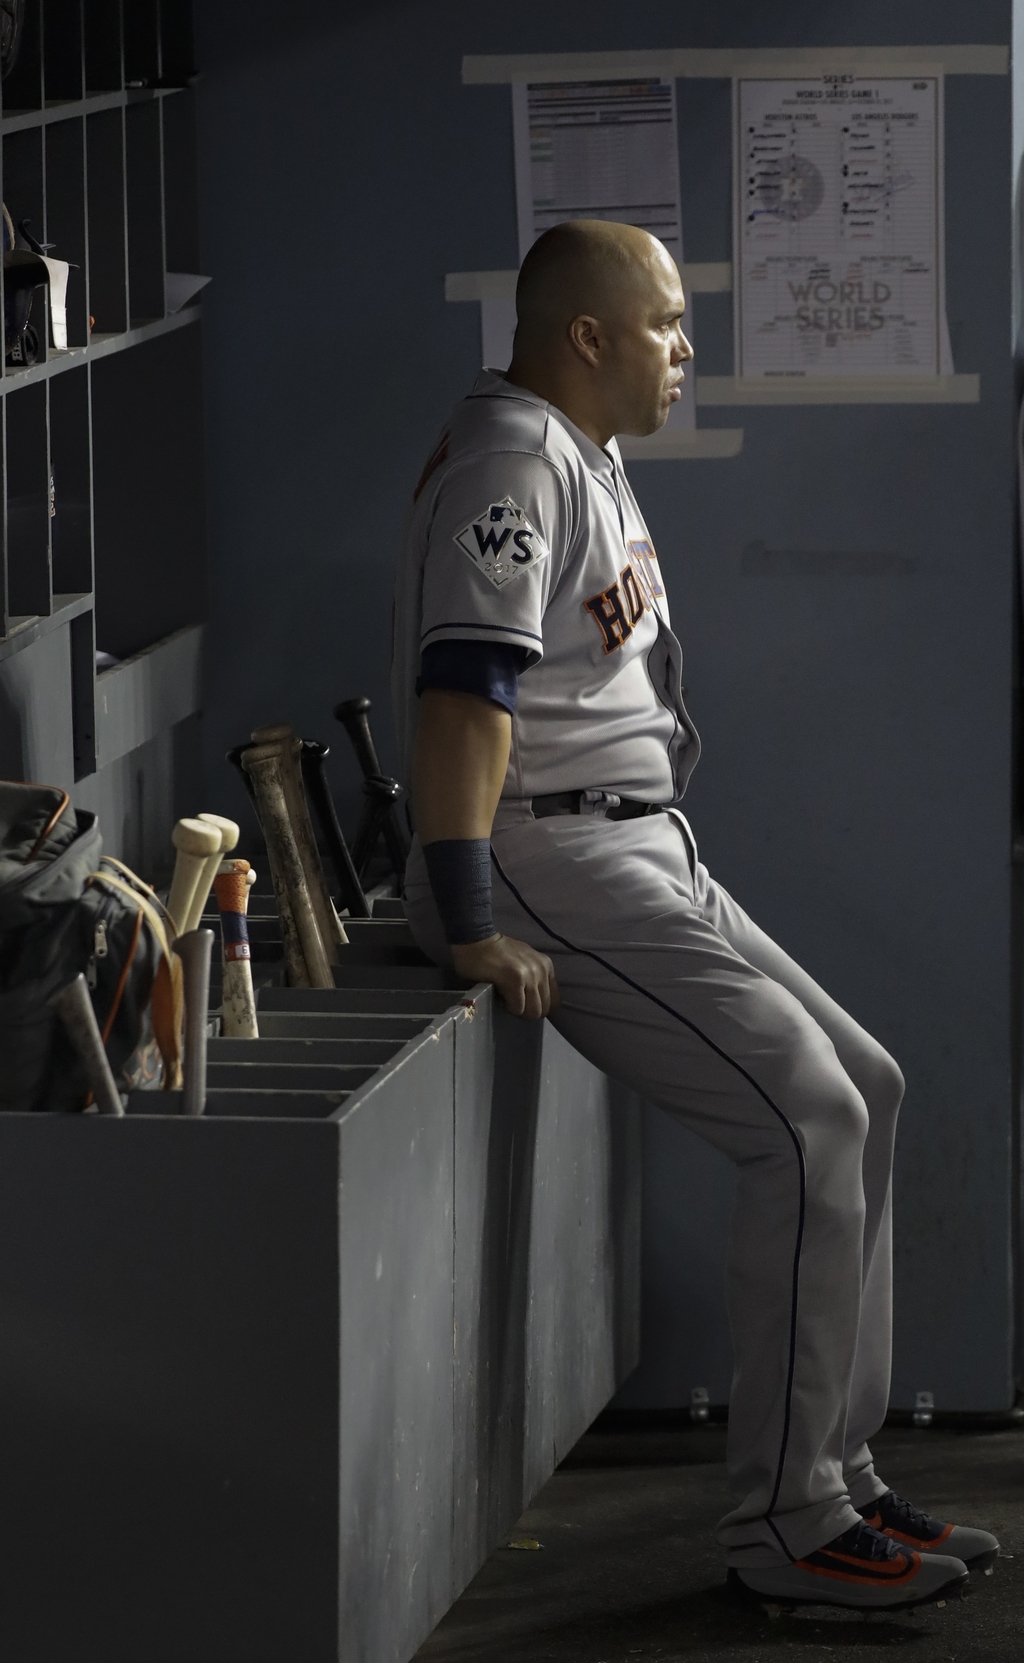 Carlos Beltrán, exjugador de los Astros, no debutó como mánager de los Mets, ya que fue cesado del cargo debido al escándalo de robo de señales de Houston en la campaña 2017. (ARCHIVO) 